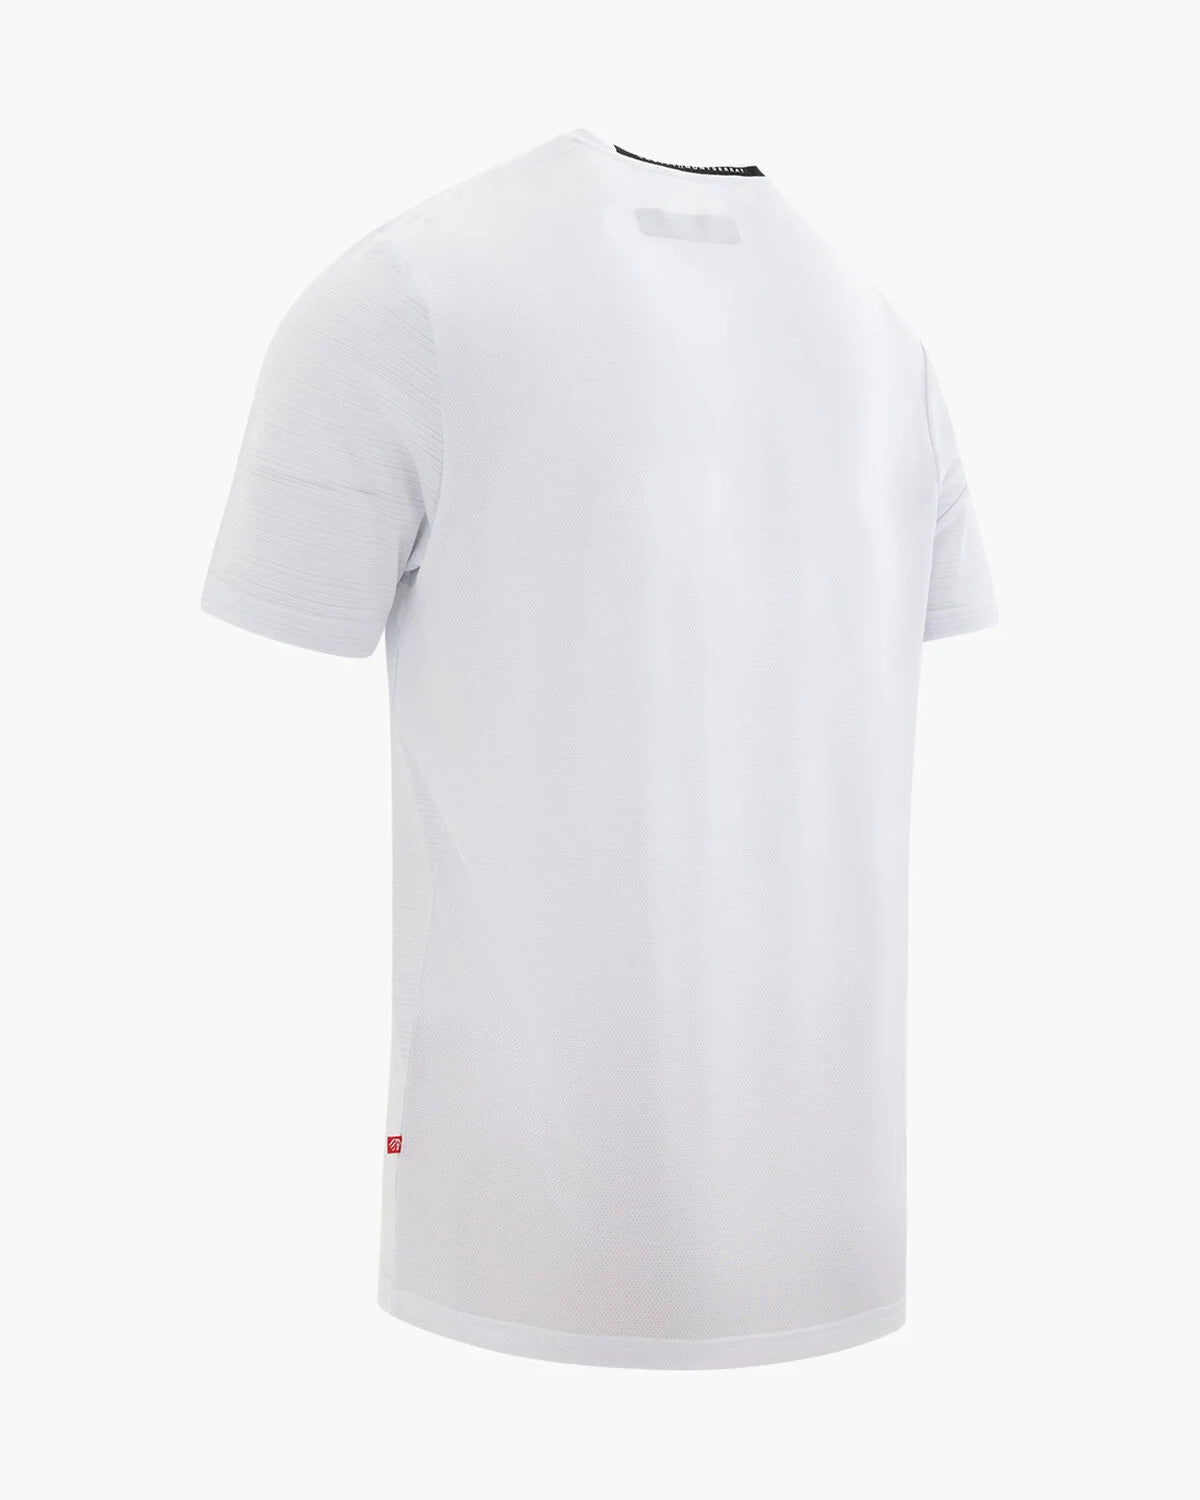 Cruyff Advance T-Shirt  White